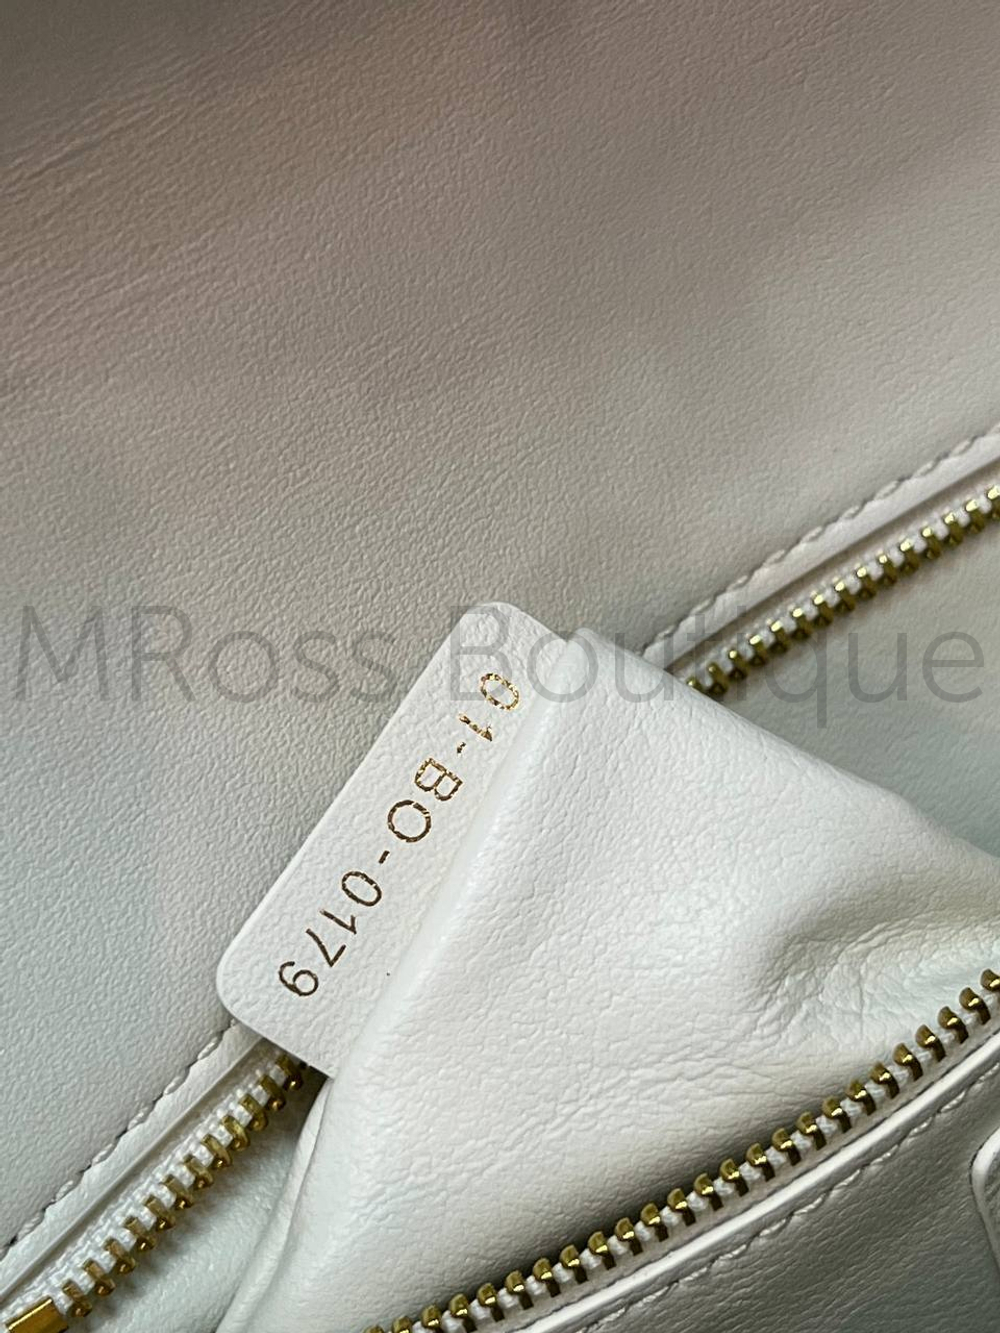 Белая сумка Dior 30 Montaigne (Диор) из зернистой кожи